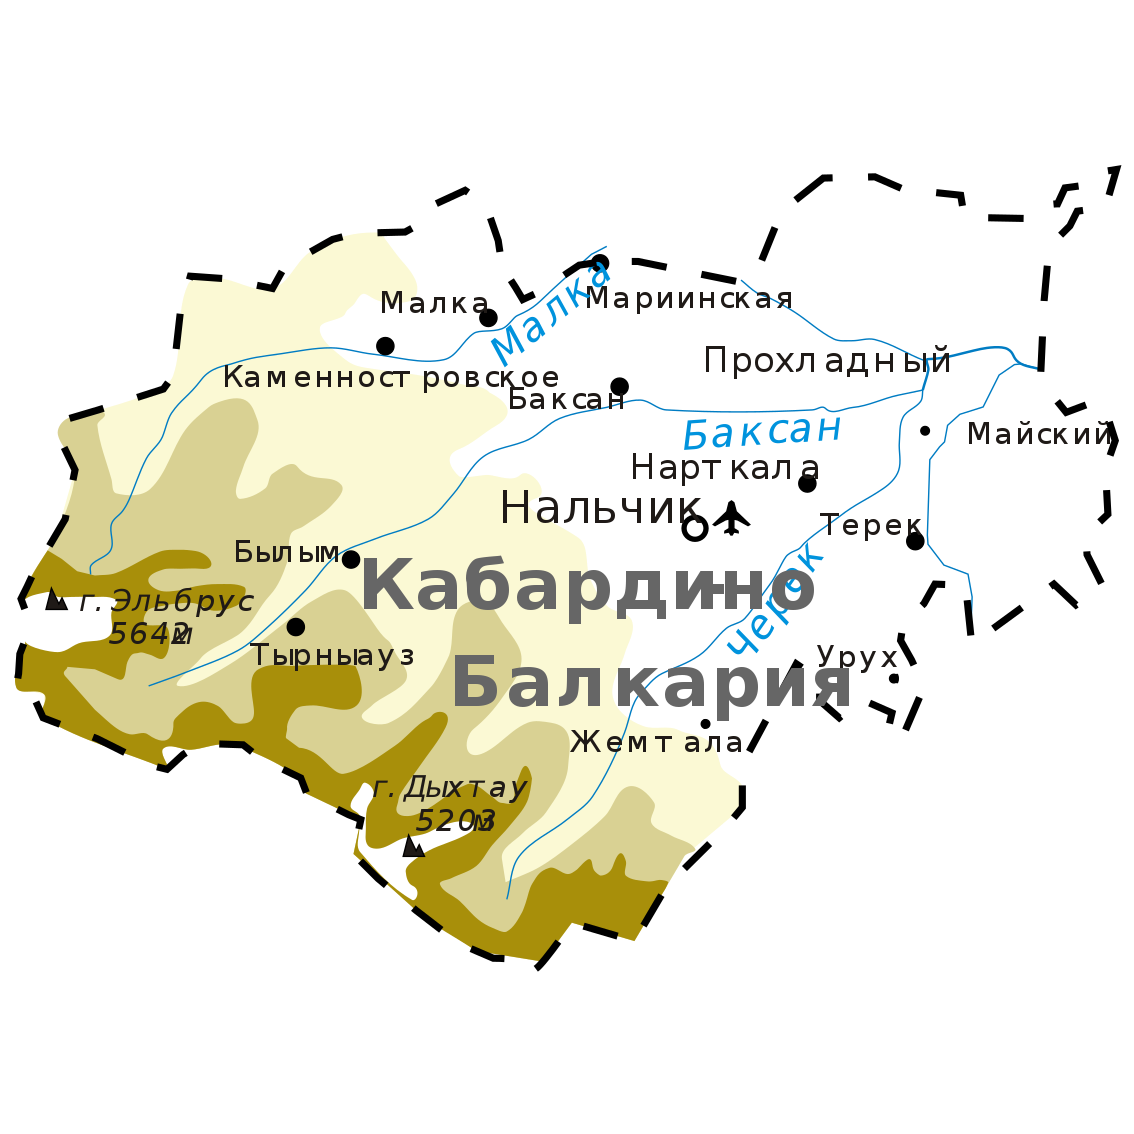 Кабардино-балкарская республика – эльбрус и вязанные вещи